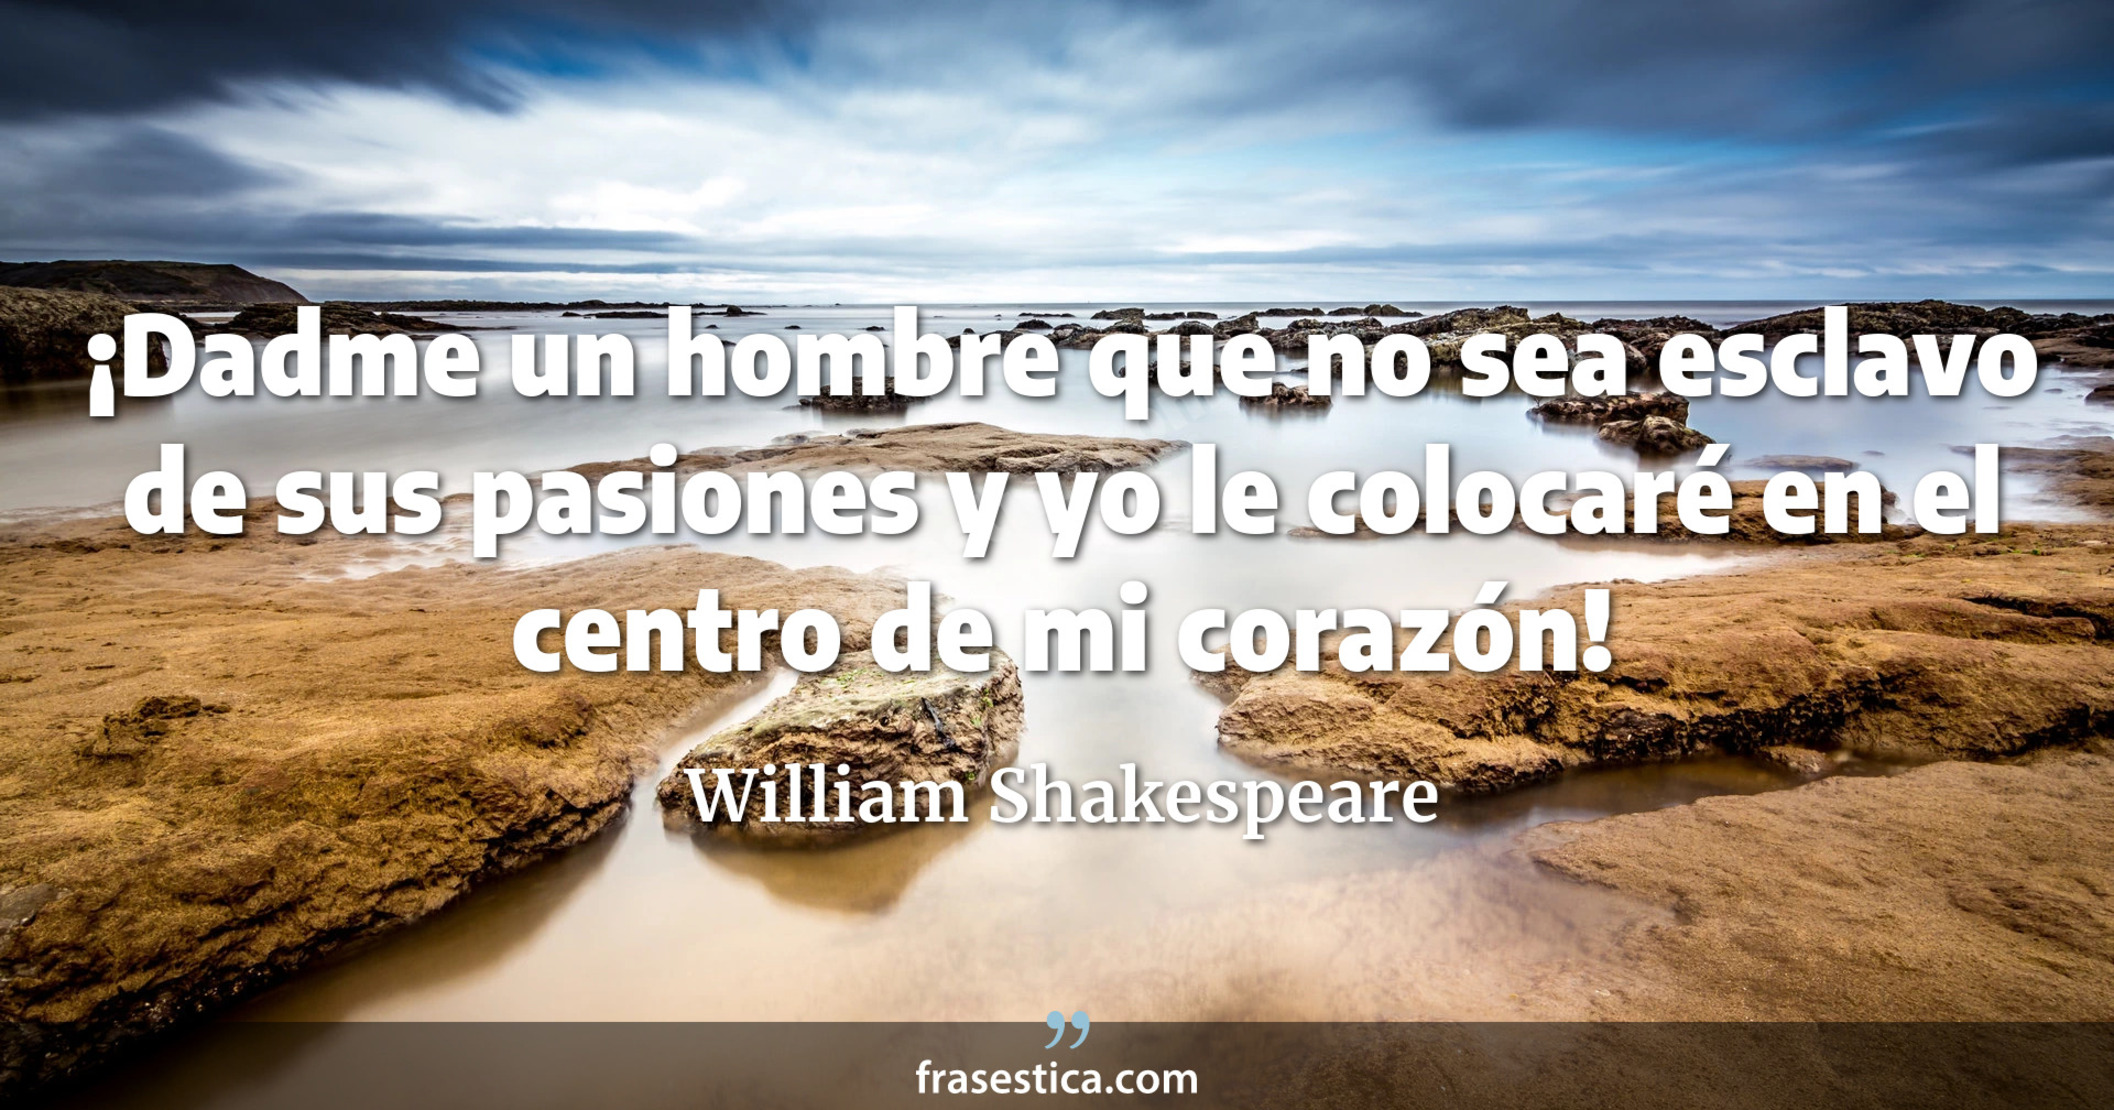 ¡Dadme un hombre que no sea esclavo de sus pasiones y yo le colocaré en el centro de mi corazón! - William Shakespeare